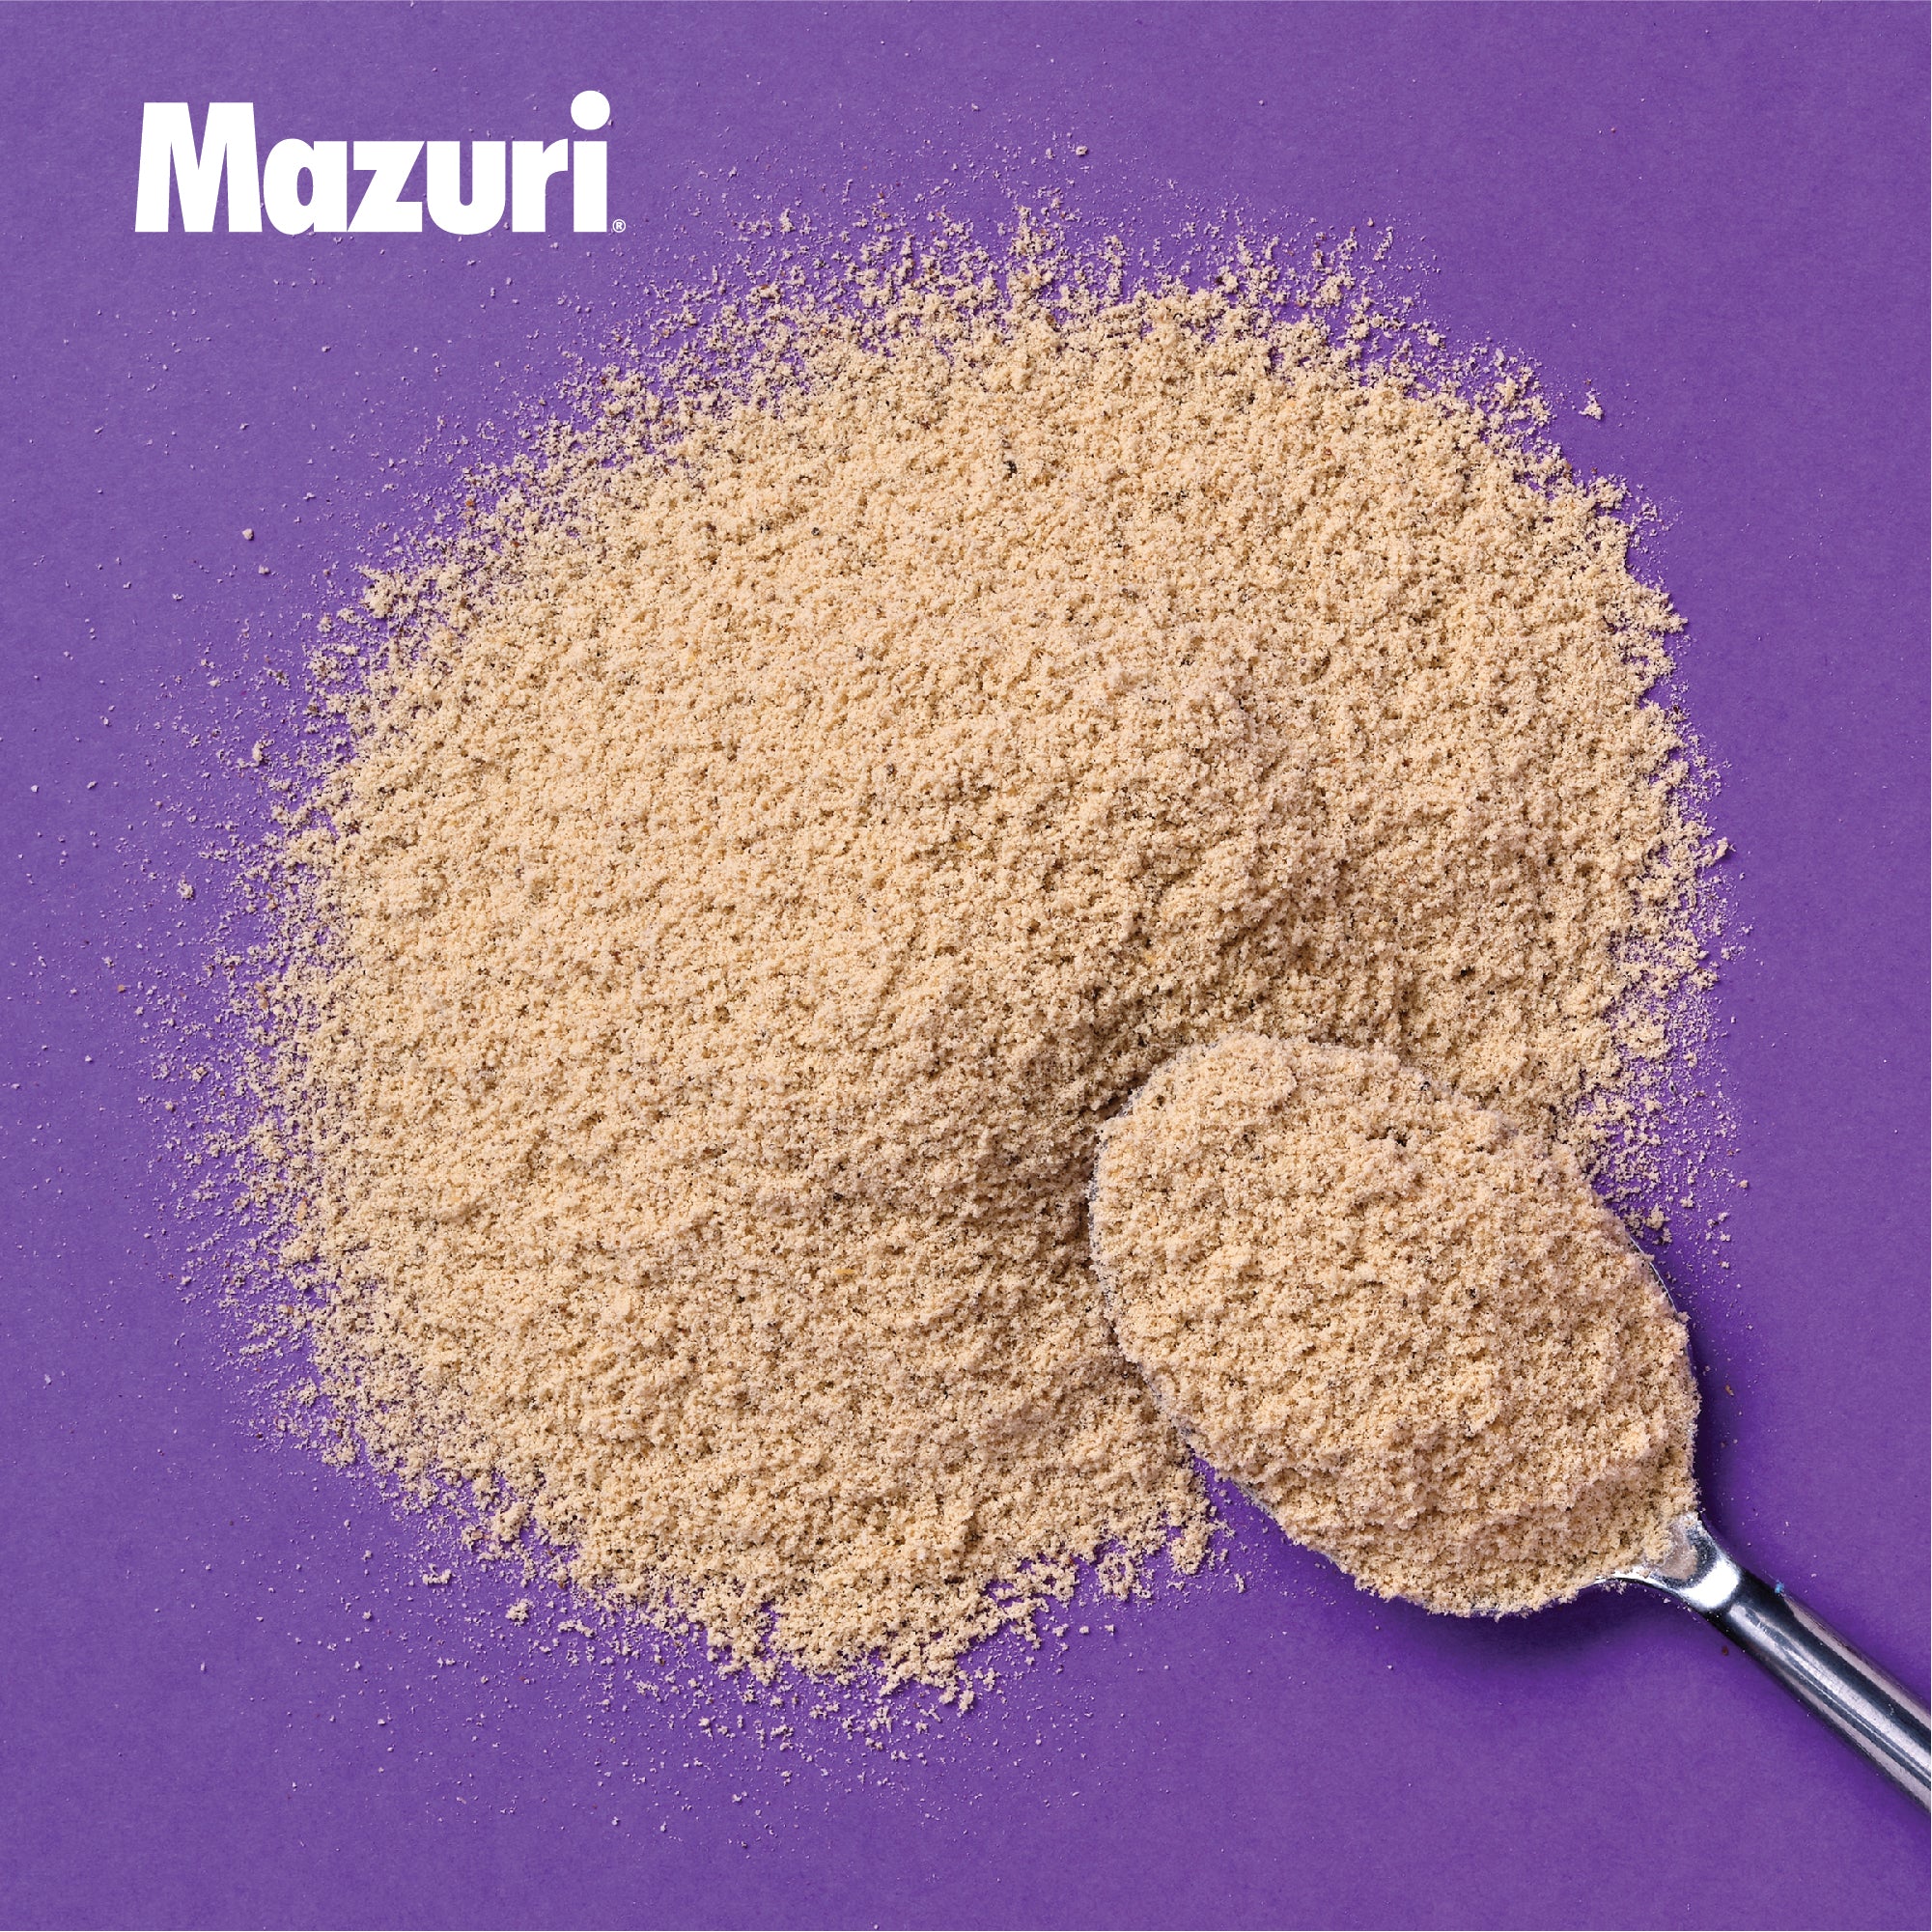 Mazuri® High-Fat Hand Feeding Formula